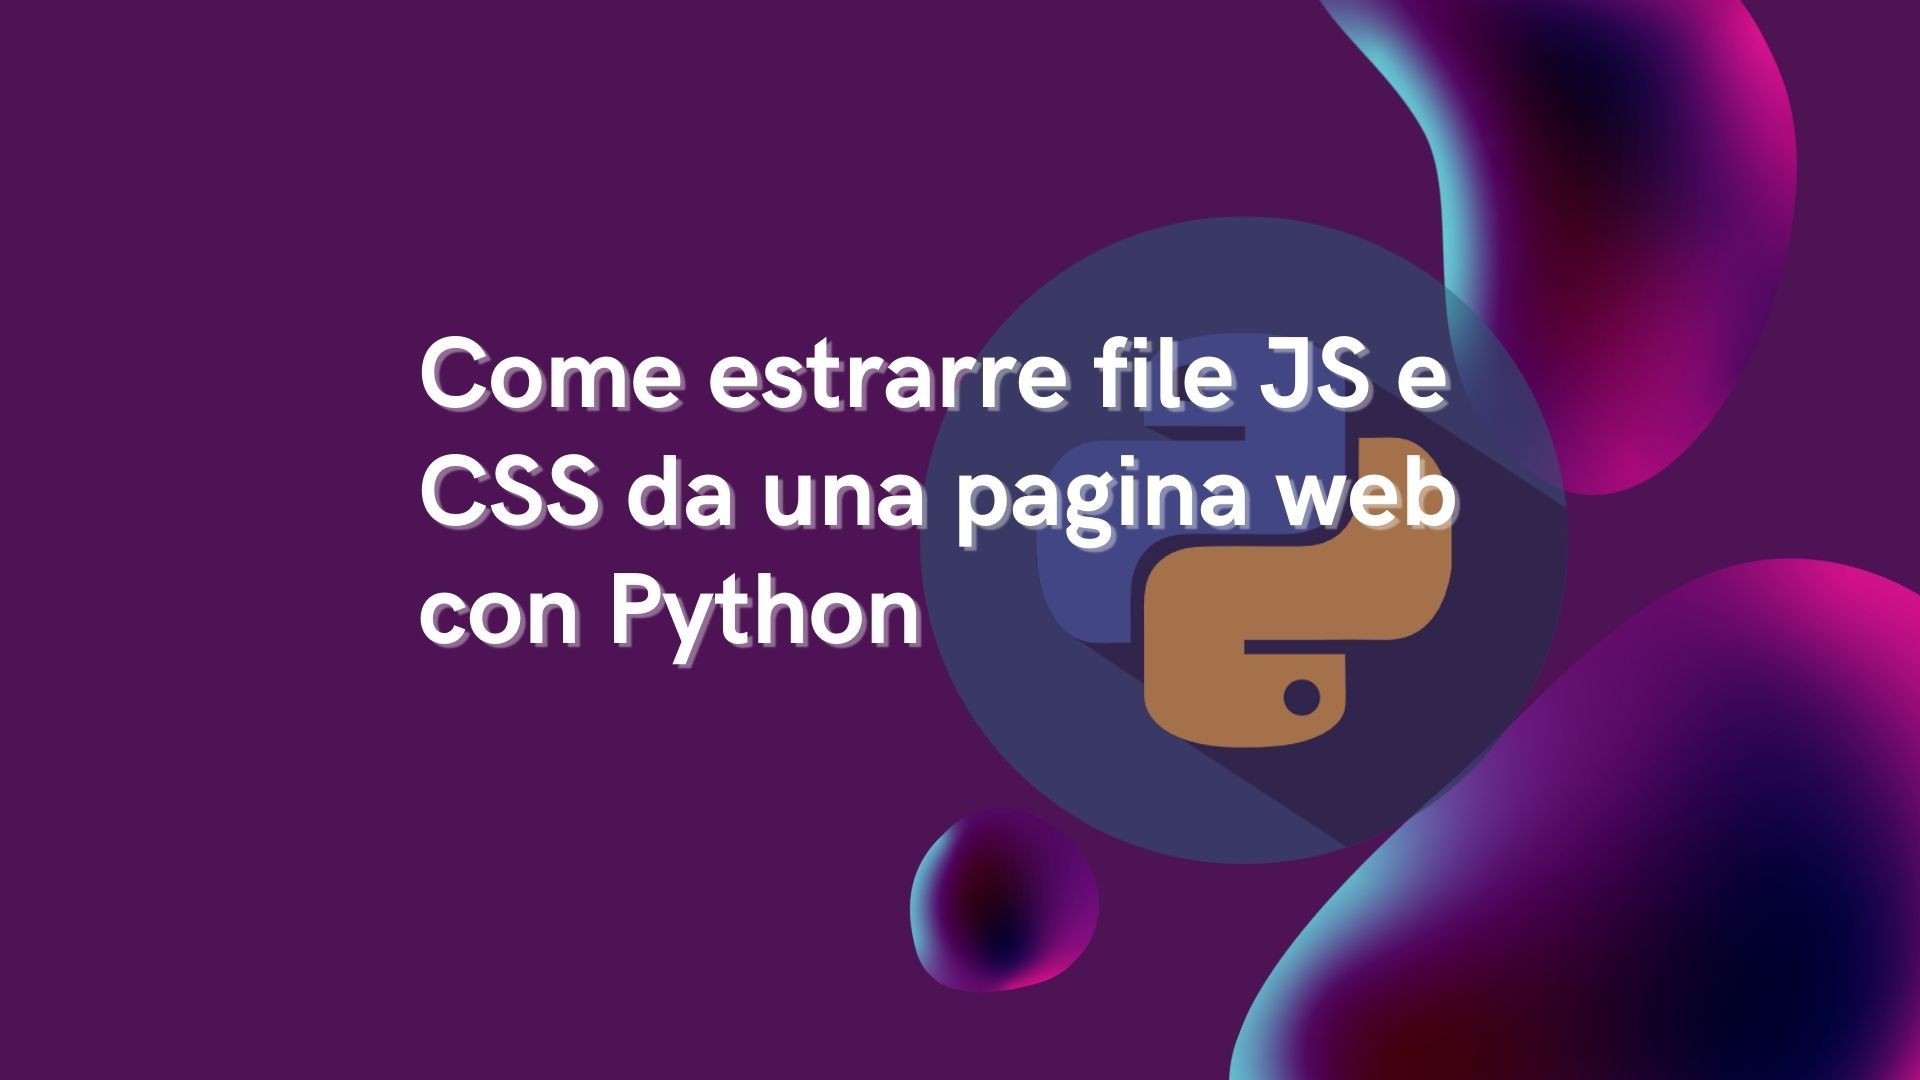 Come estrarre file JS e CSS da una pagina web con Python